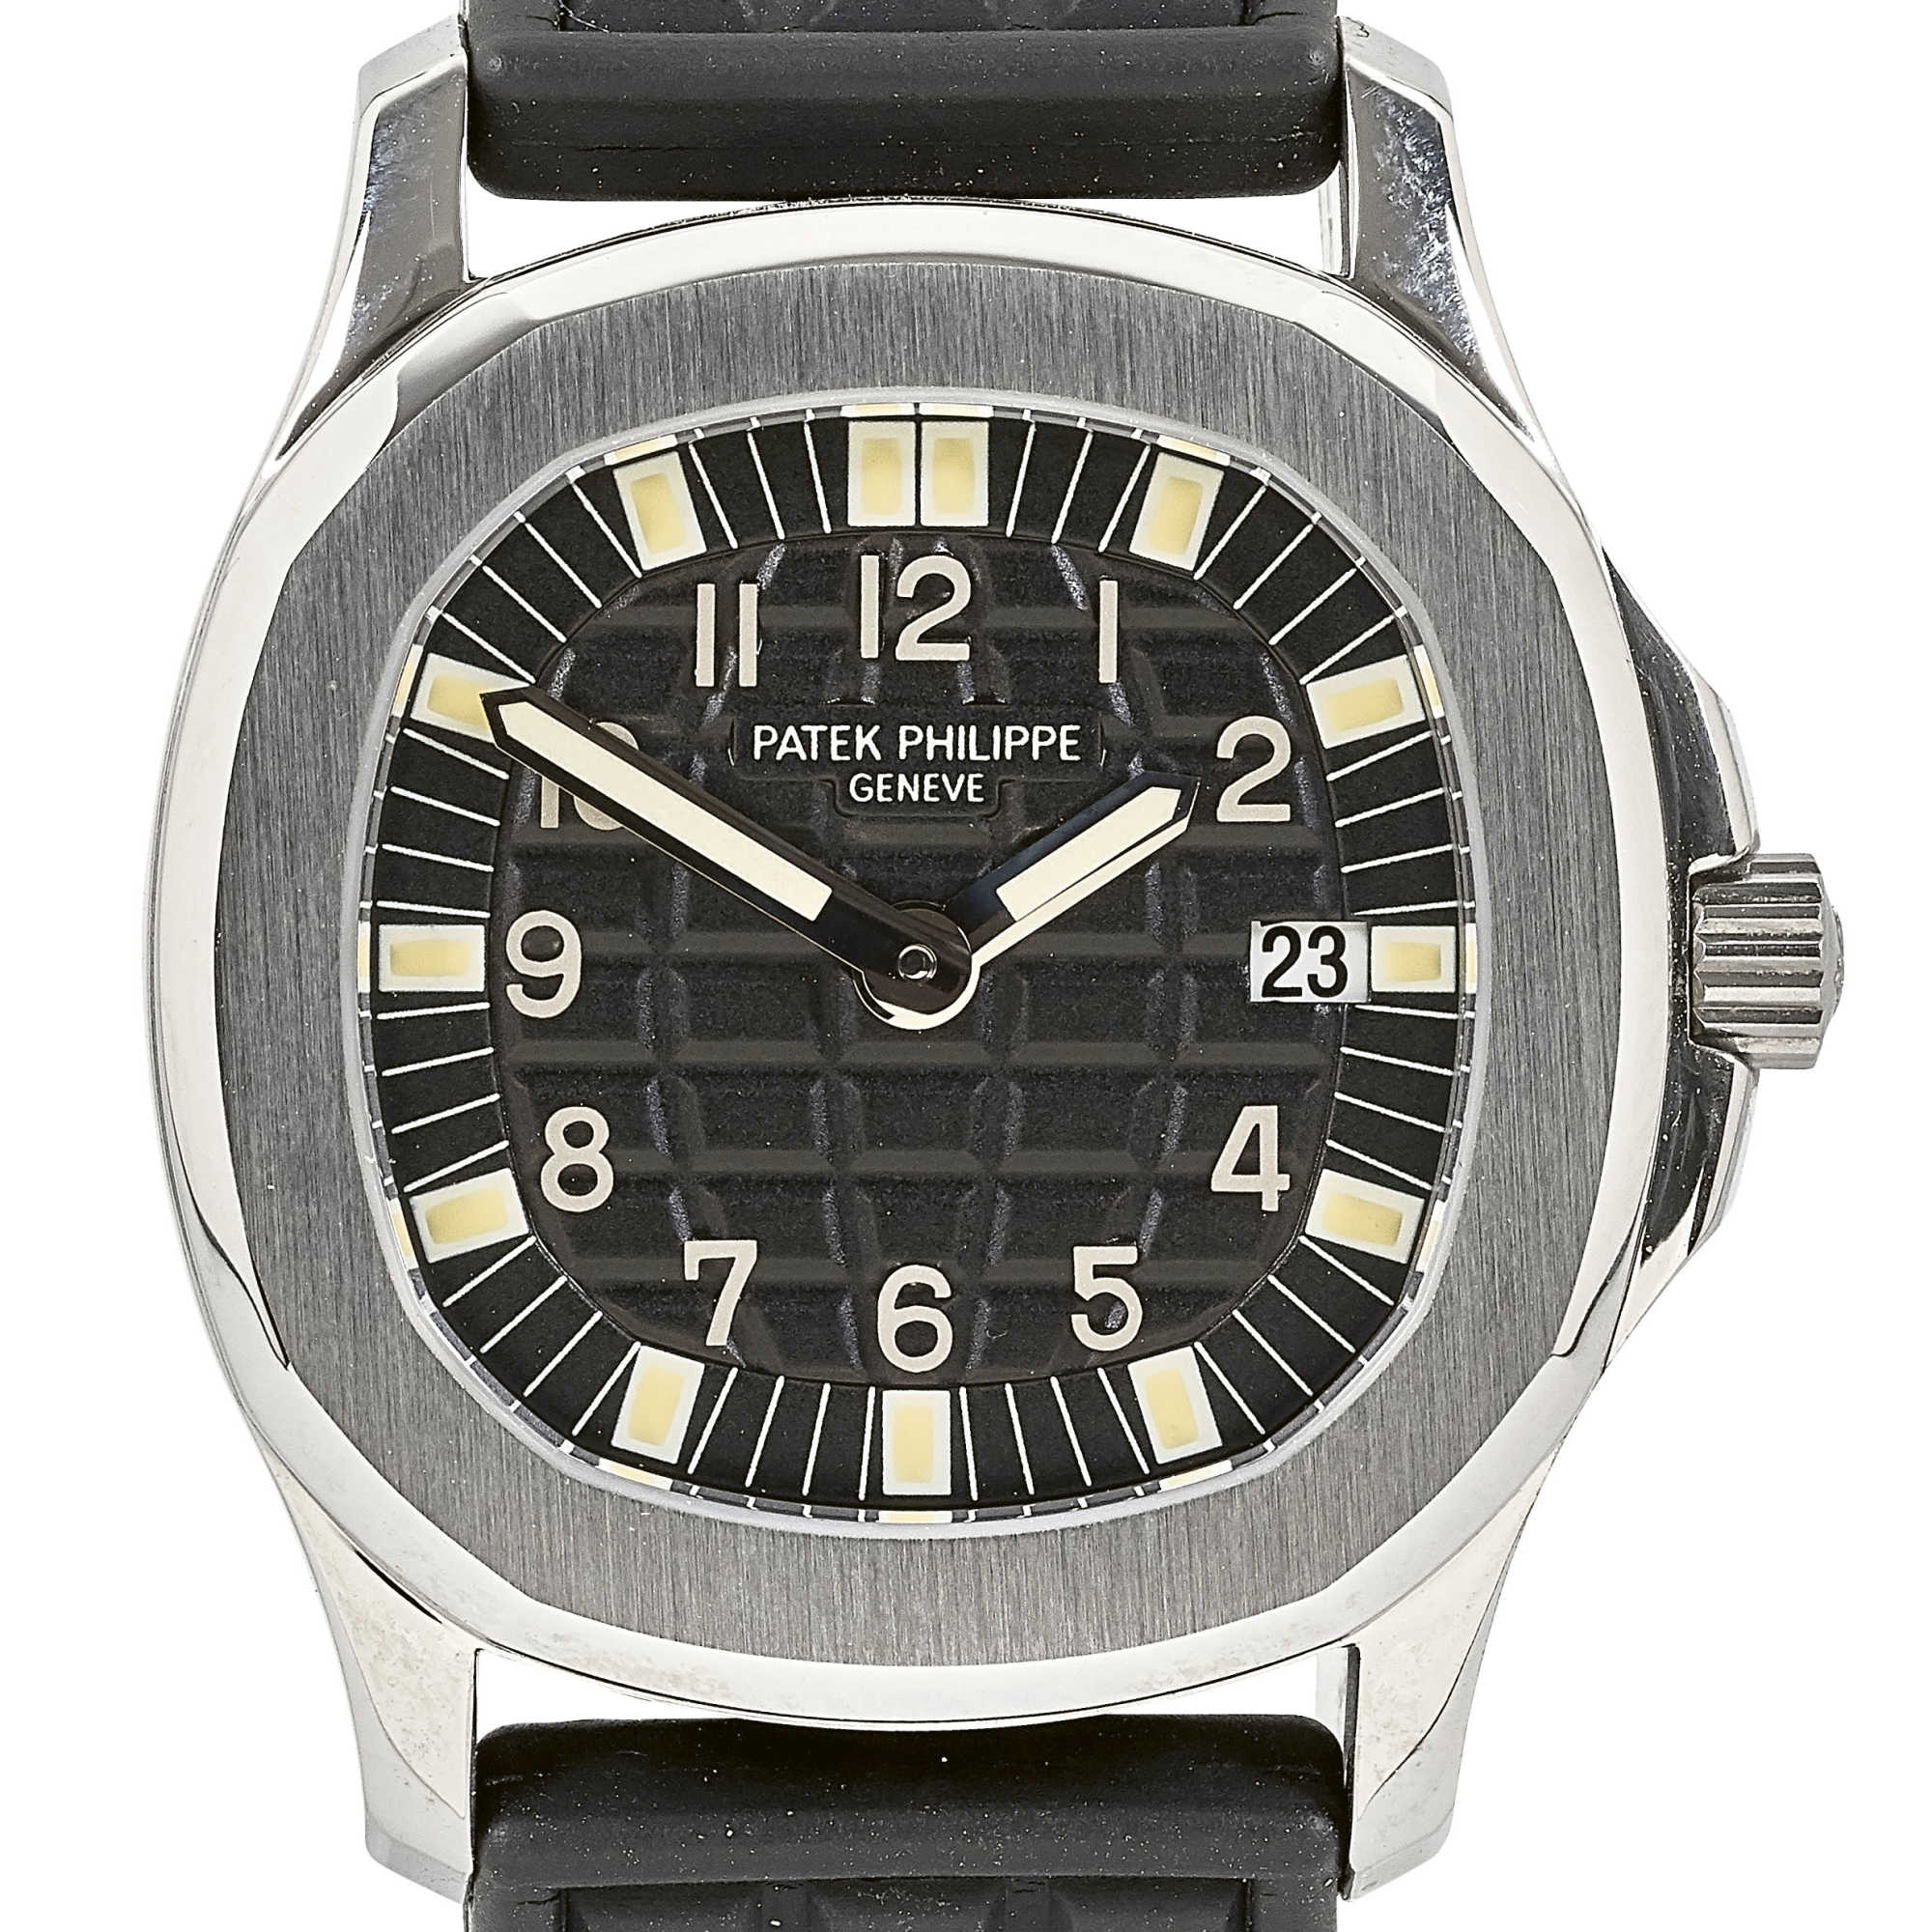 PATEK PHILIPPELady's wristwatch "Aquanaut".Manufacturer/Manufaktur: Patek Philippe, Geneva.